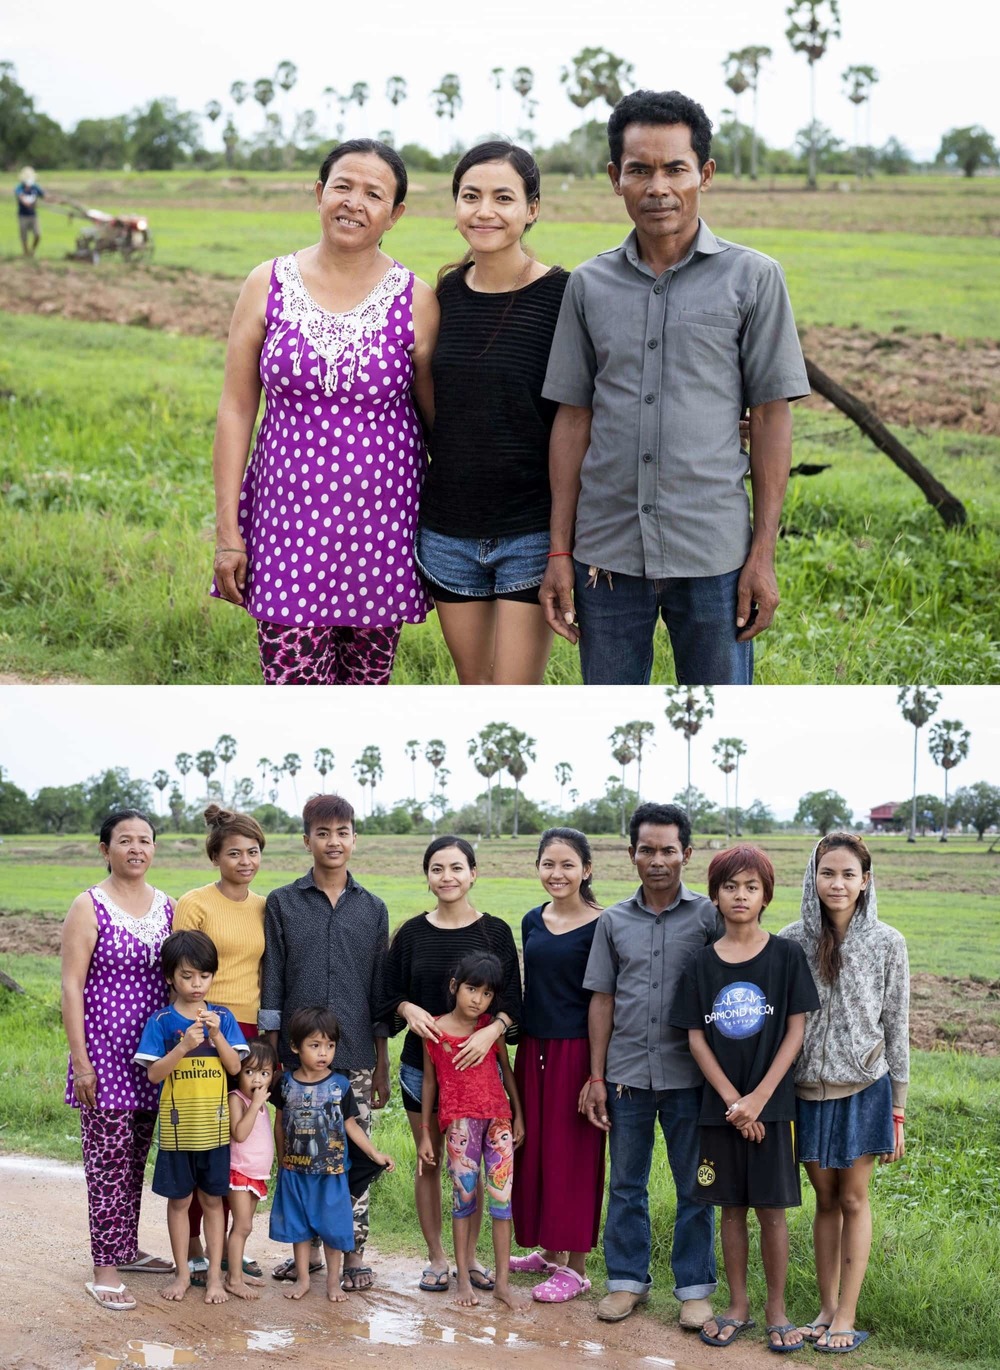  Cuộc sống của gia đình Sophy cũng đã có những thay đổi tích cực. (Ảnh: Cambodian Children's Fund)